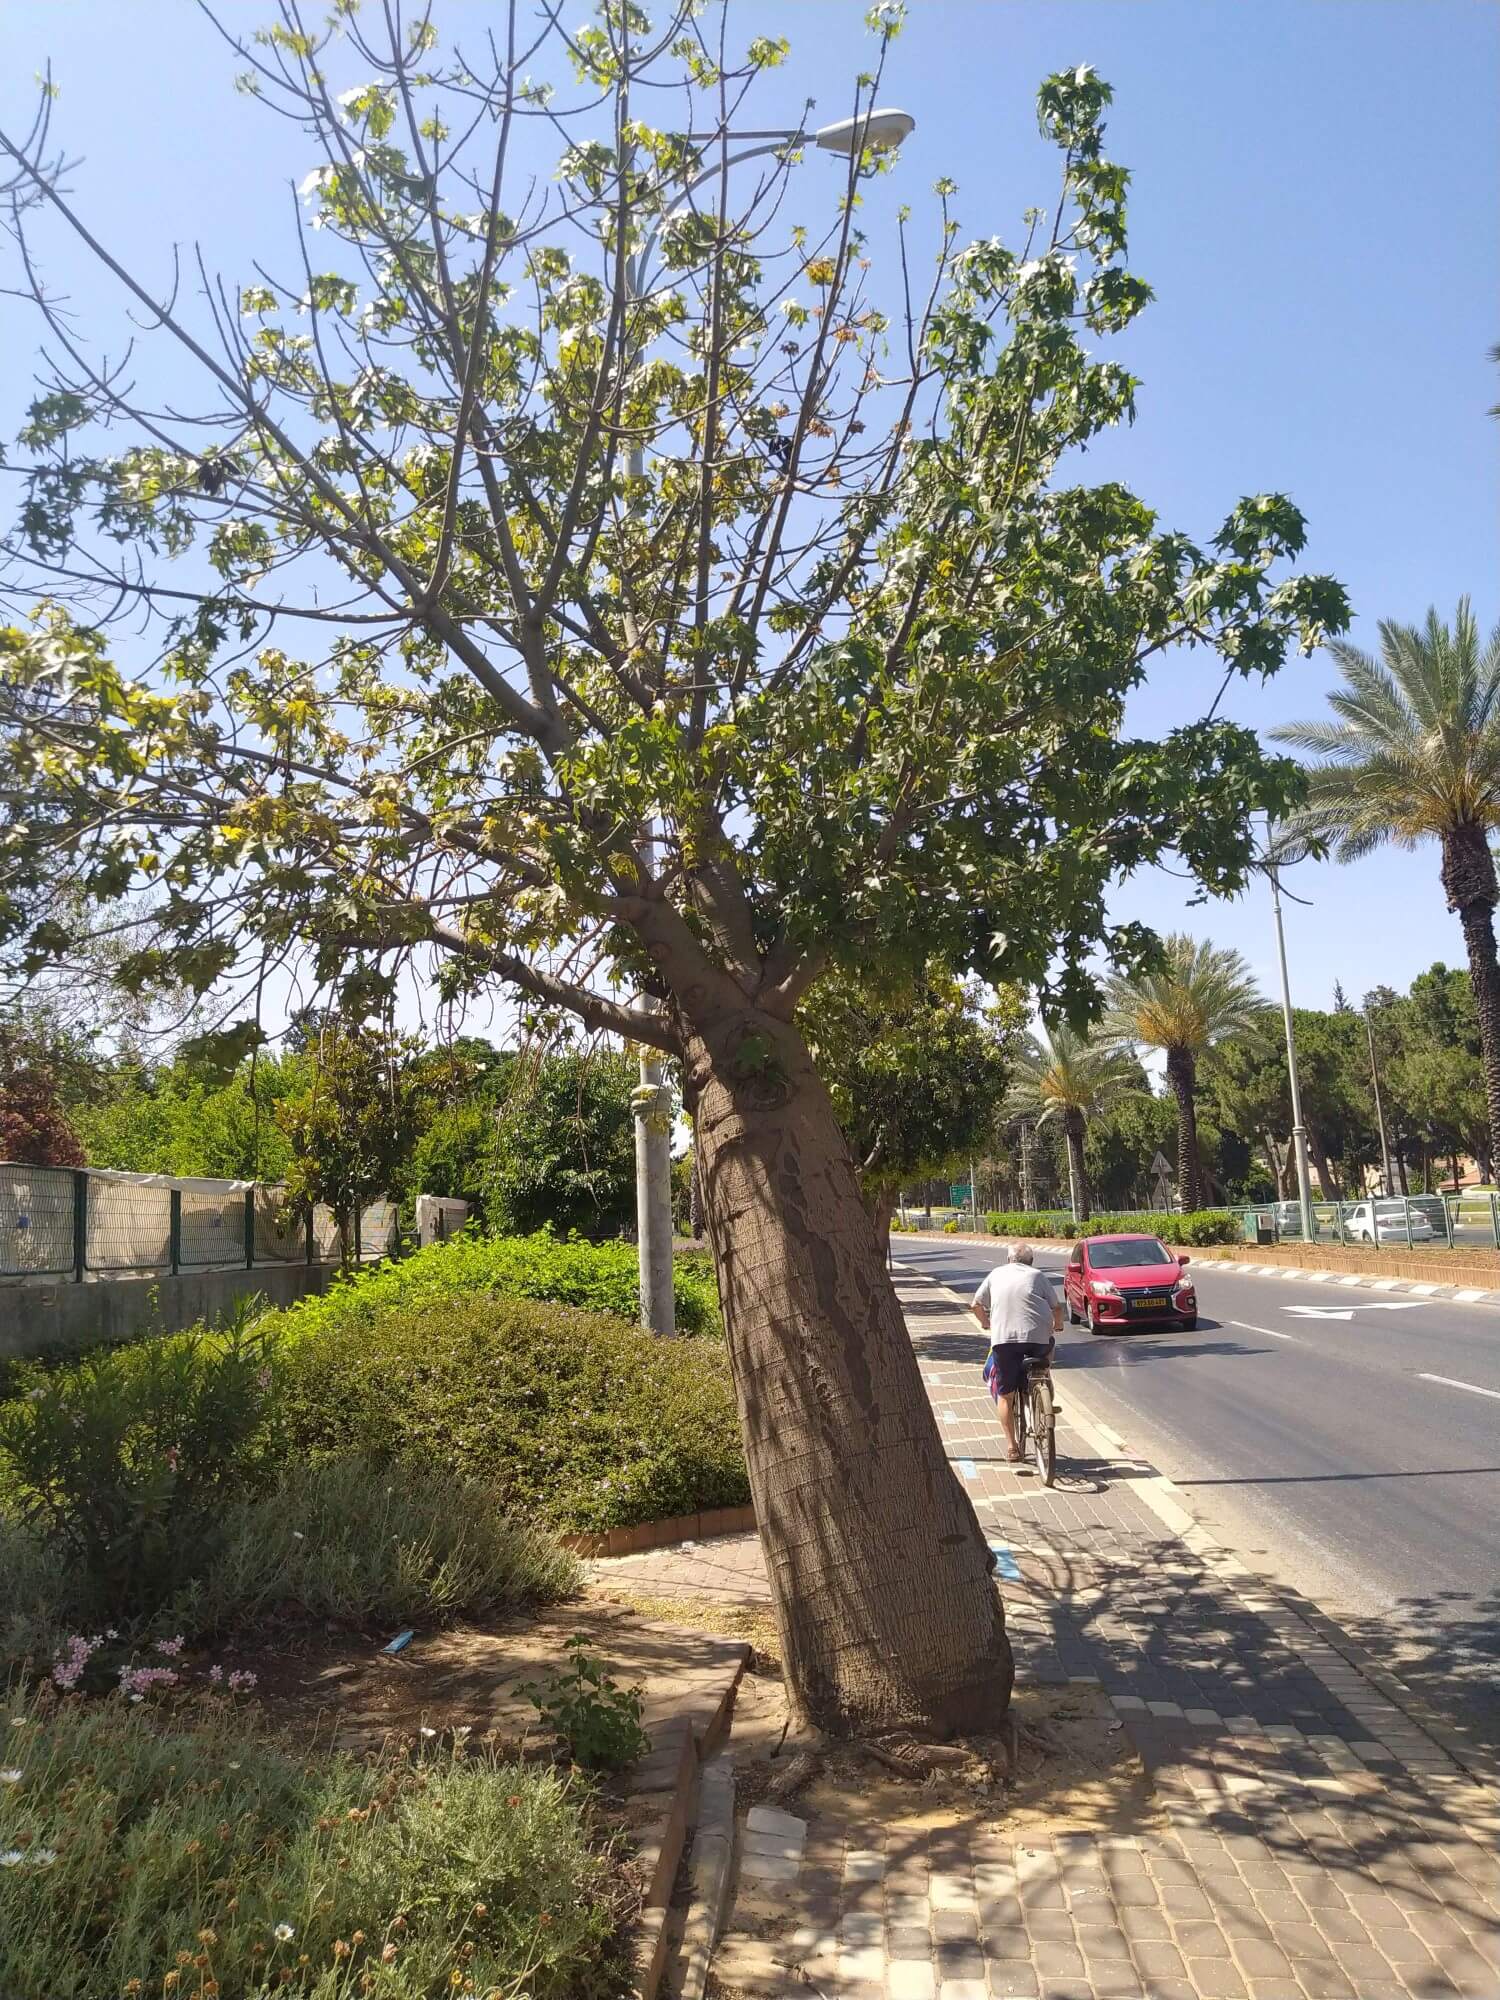 עיריית פתח תקוה תשתול עשרות עצים חדשים במקום העצים שנמצאו בסכנת קריסה